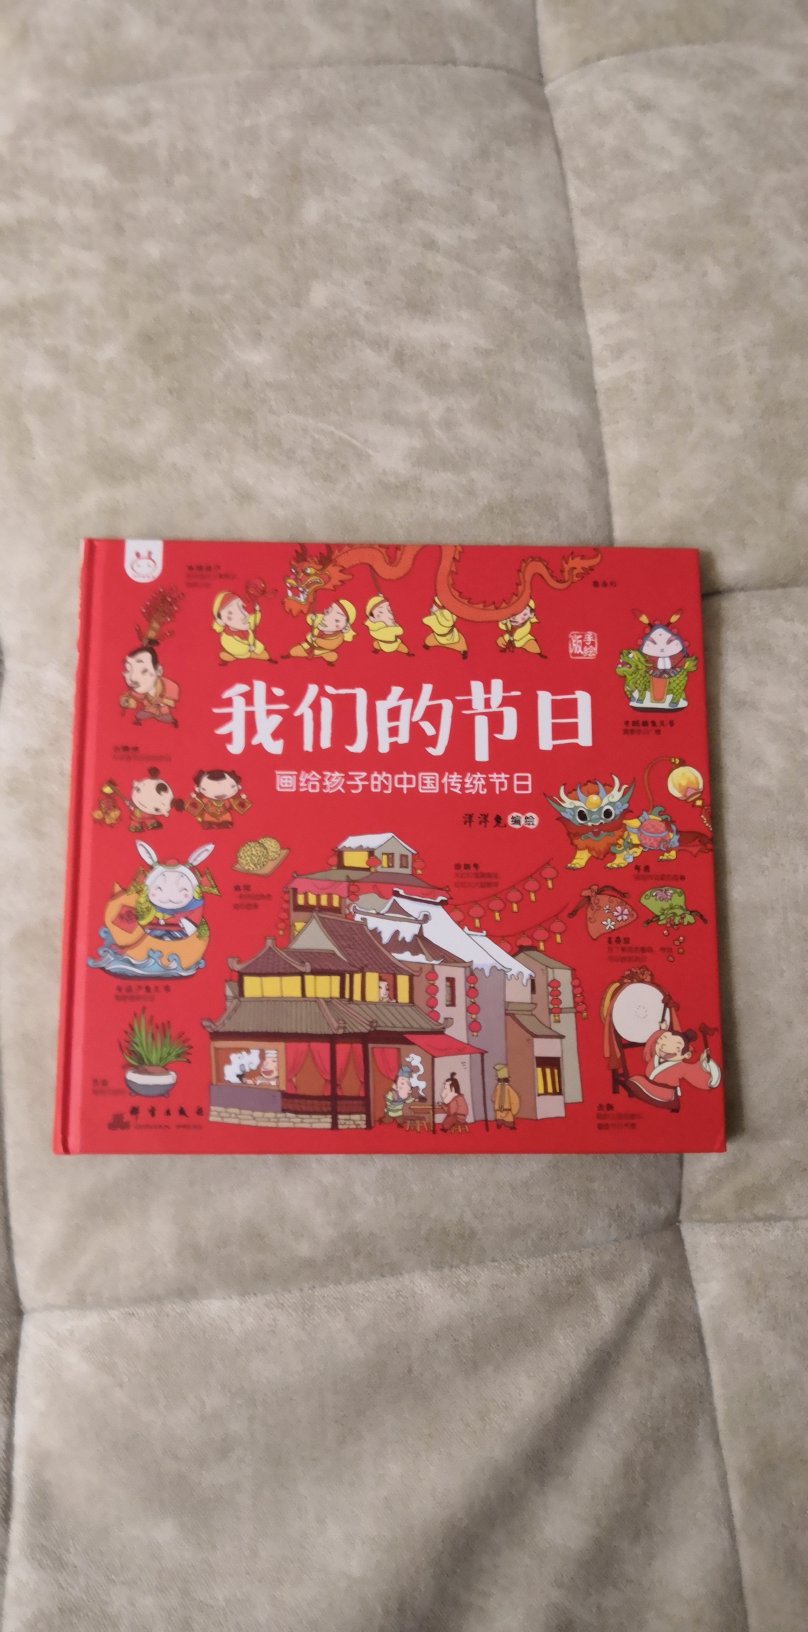 适合小朋友看！学习中国传统文化，发扬光大！